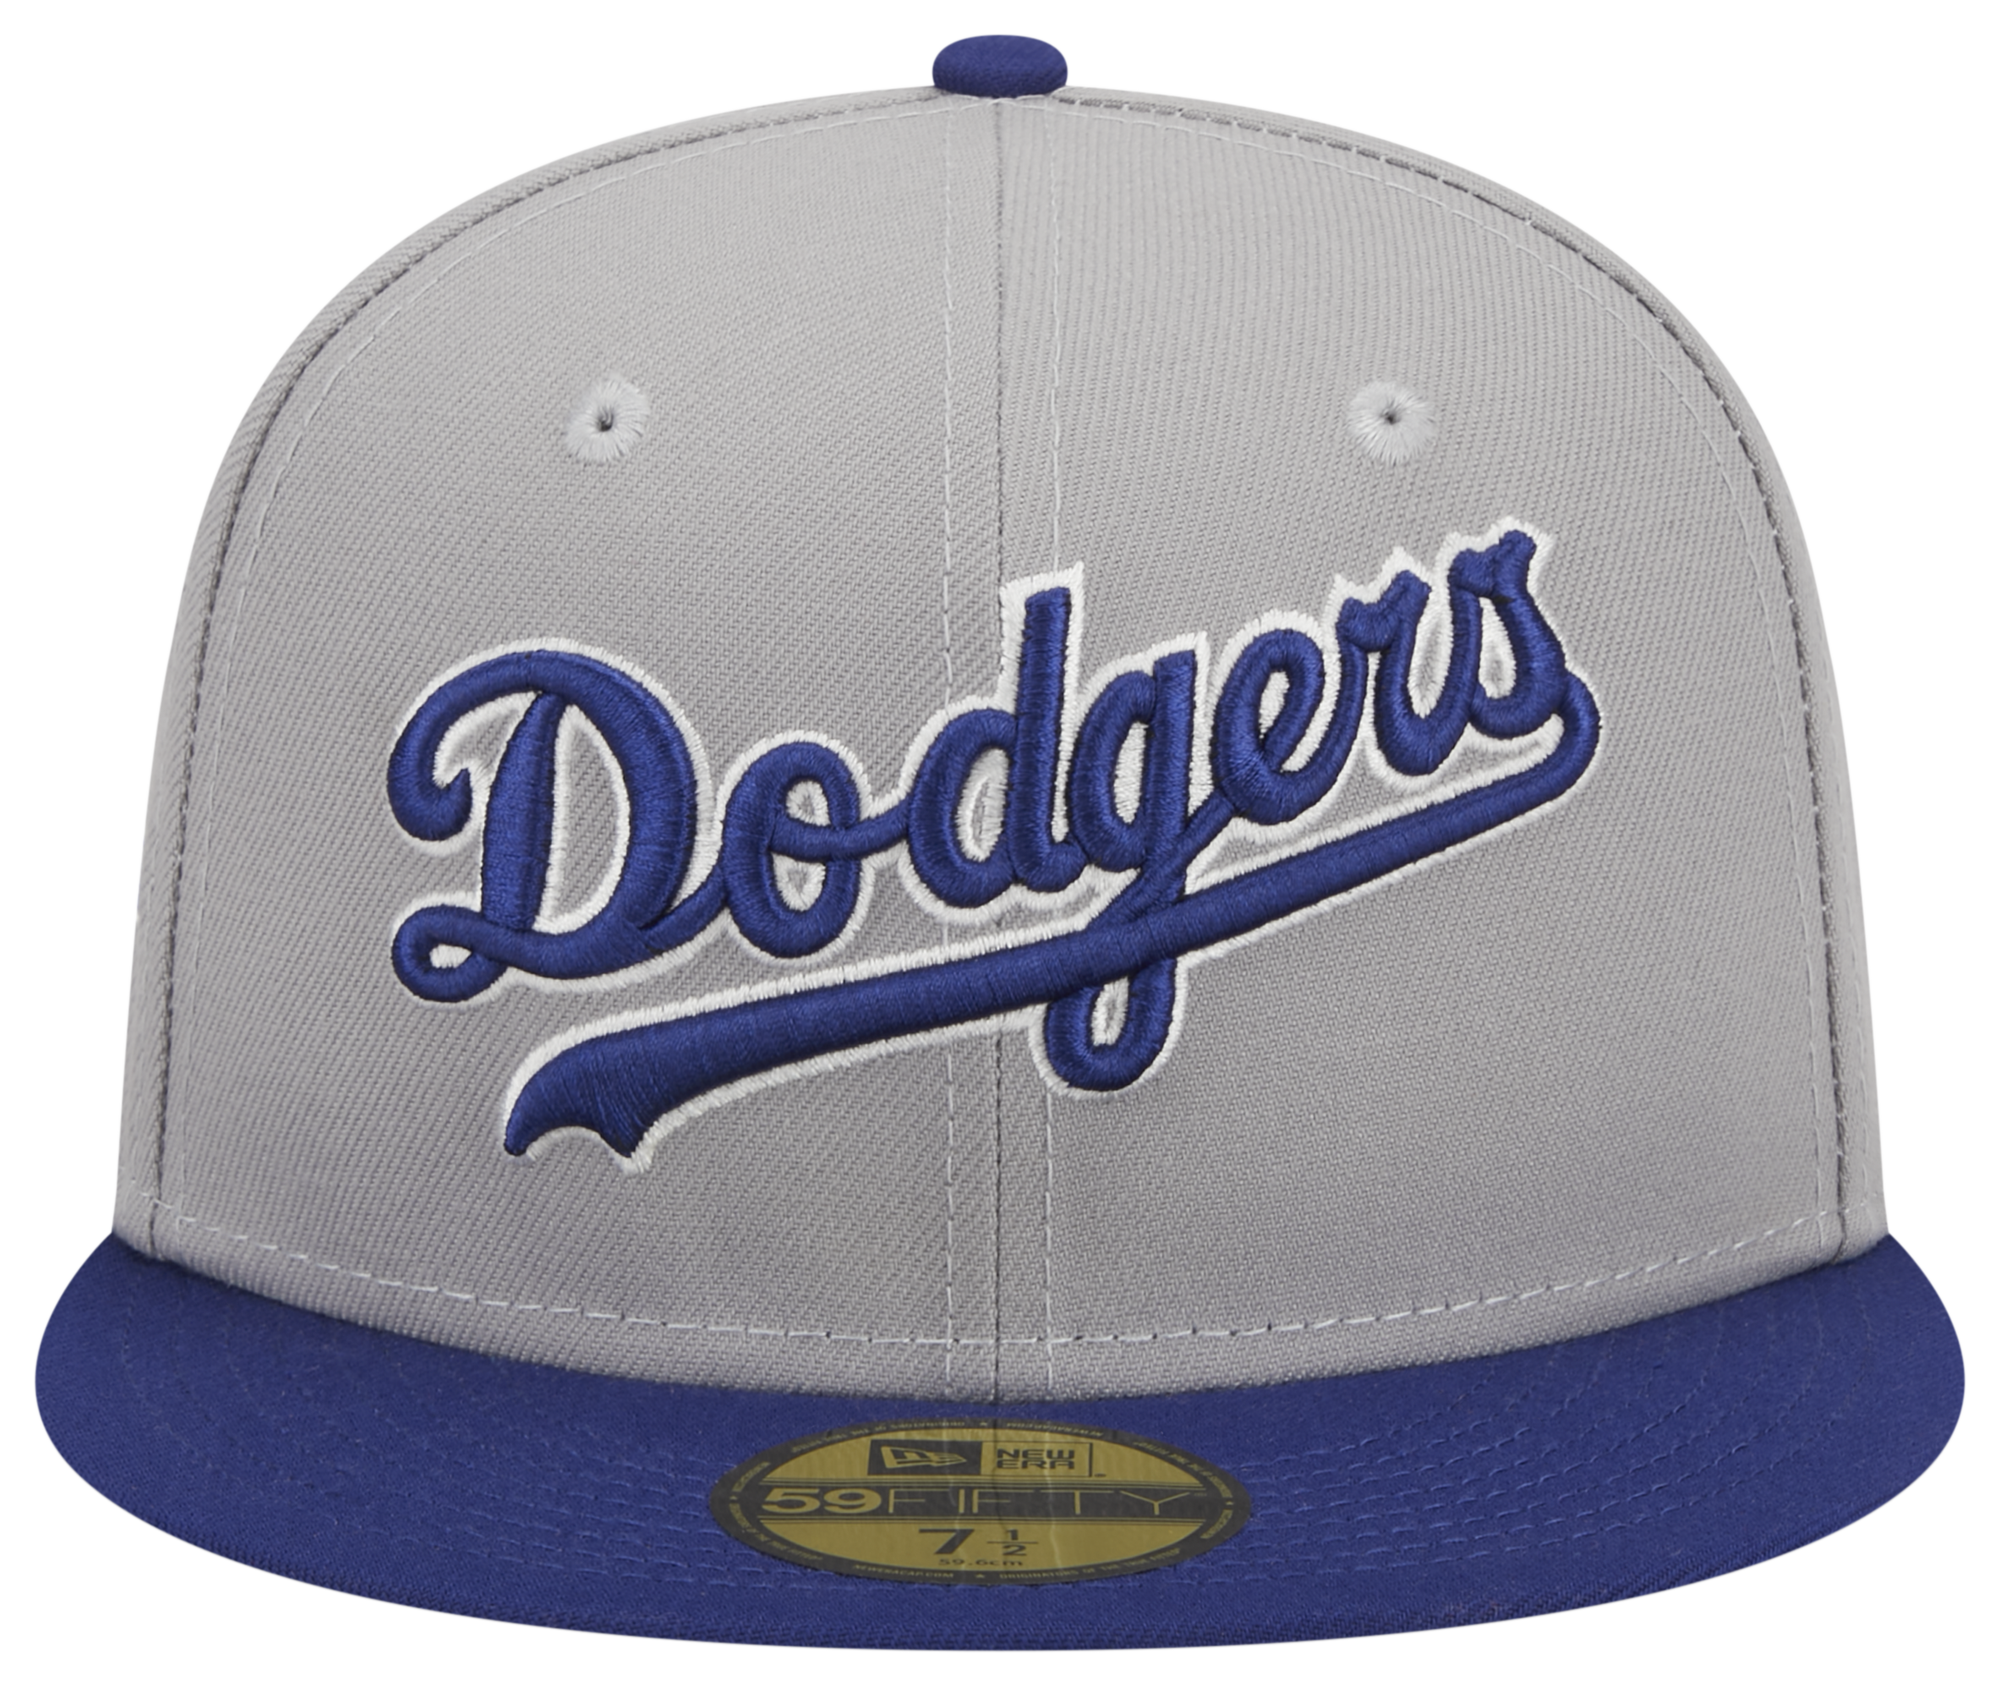 New Era Dodgers Retro Script Cap